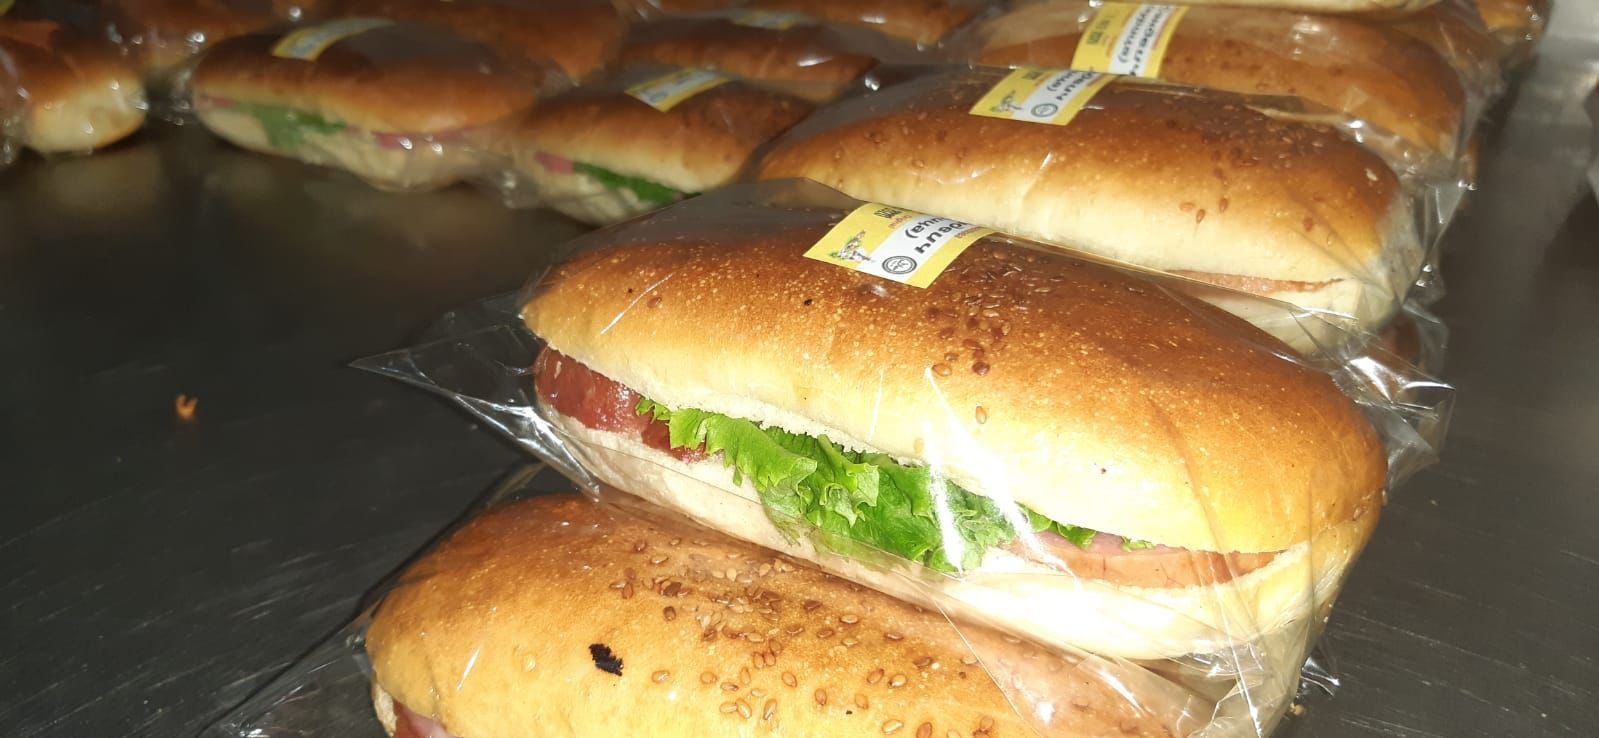 Обеды салаты Сэндвичи 4 видов круасаны самса выпечка в ассортименте.